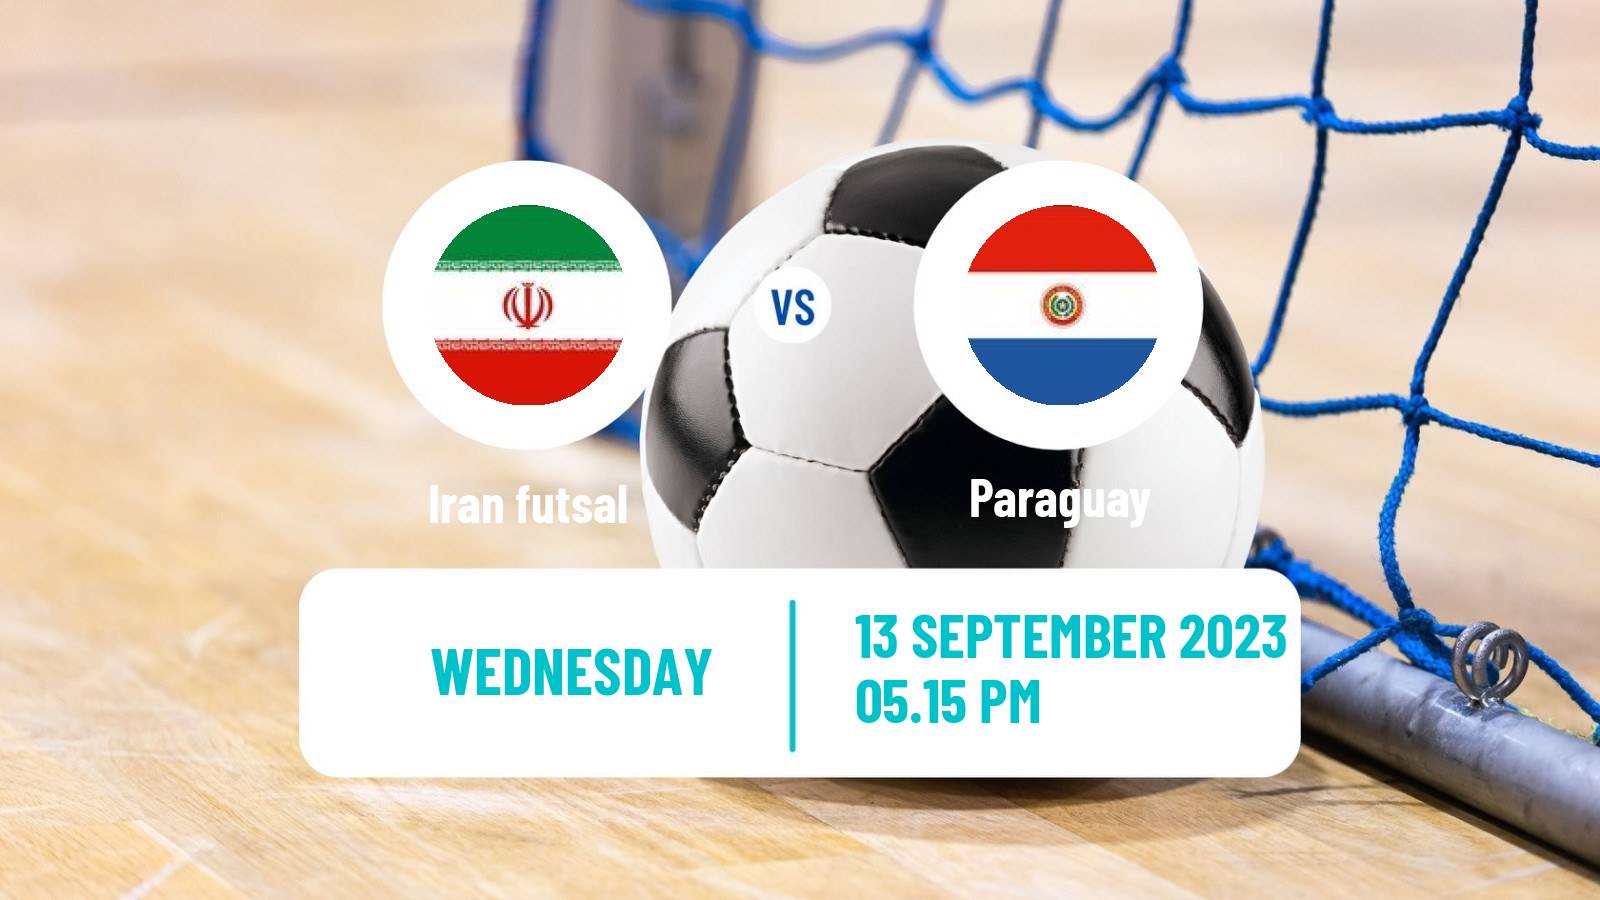 Futsal Friendly International Futsal Iran - Paraguay